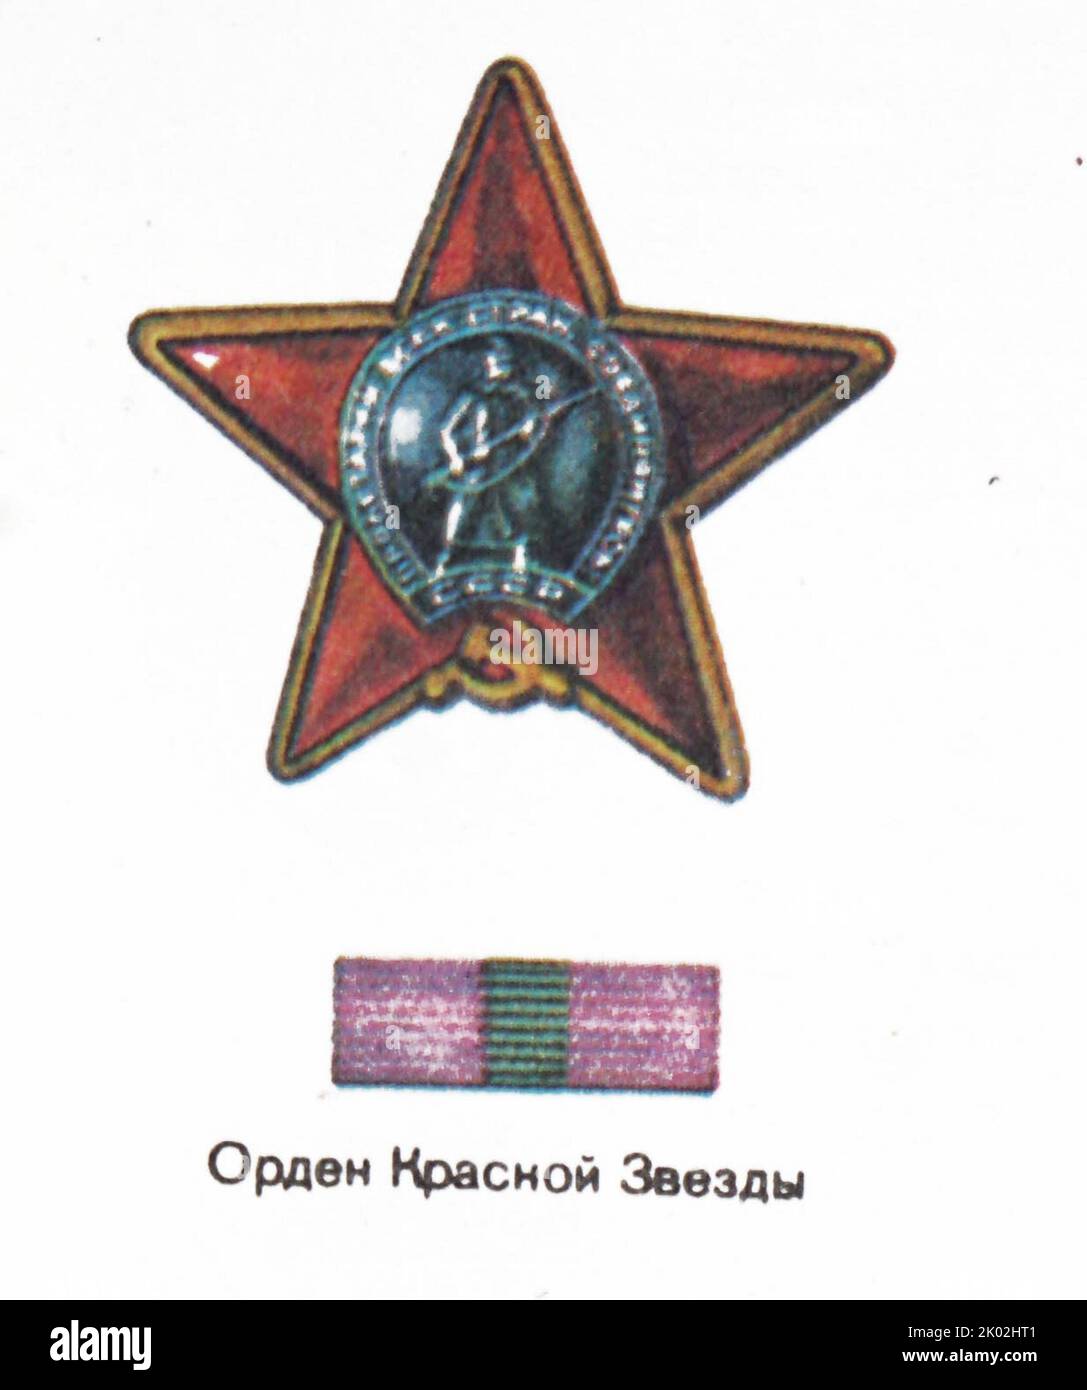 L'ordre de l'étoile rouge; une décoration militaire de l'Union soviétique. Il a été créé par décret du Présidium du Soviet suprême de l'URSS du 6 avril 1930 Banque D'Images